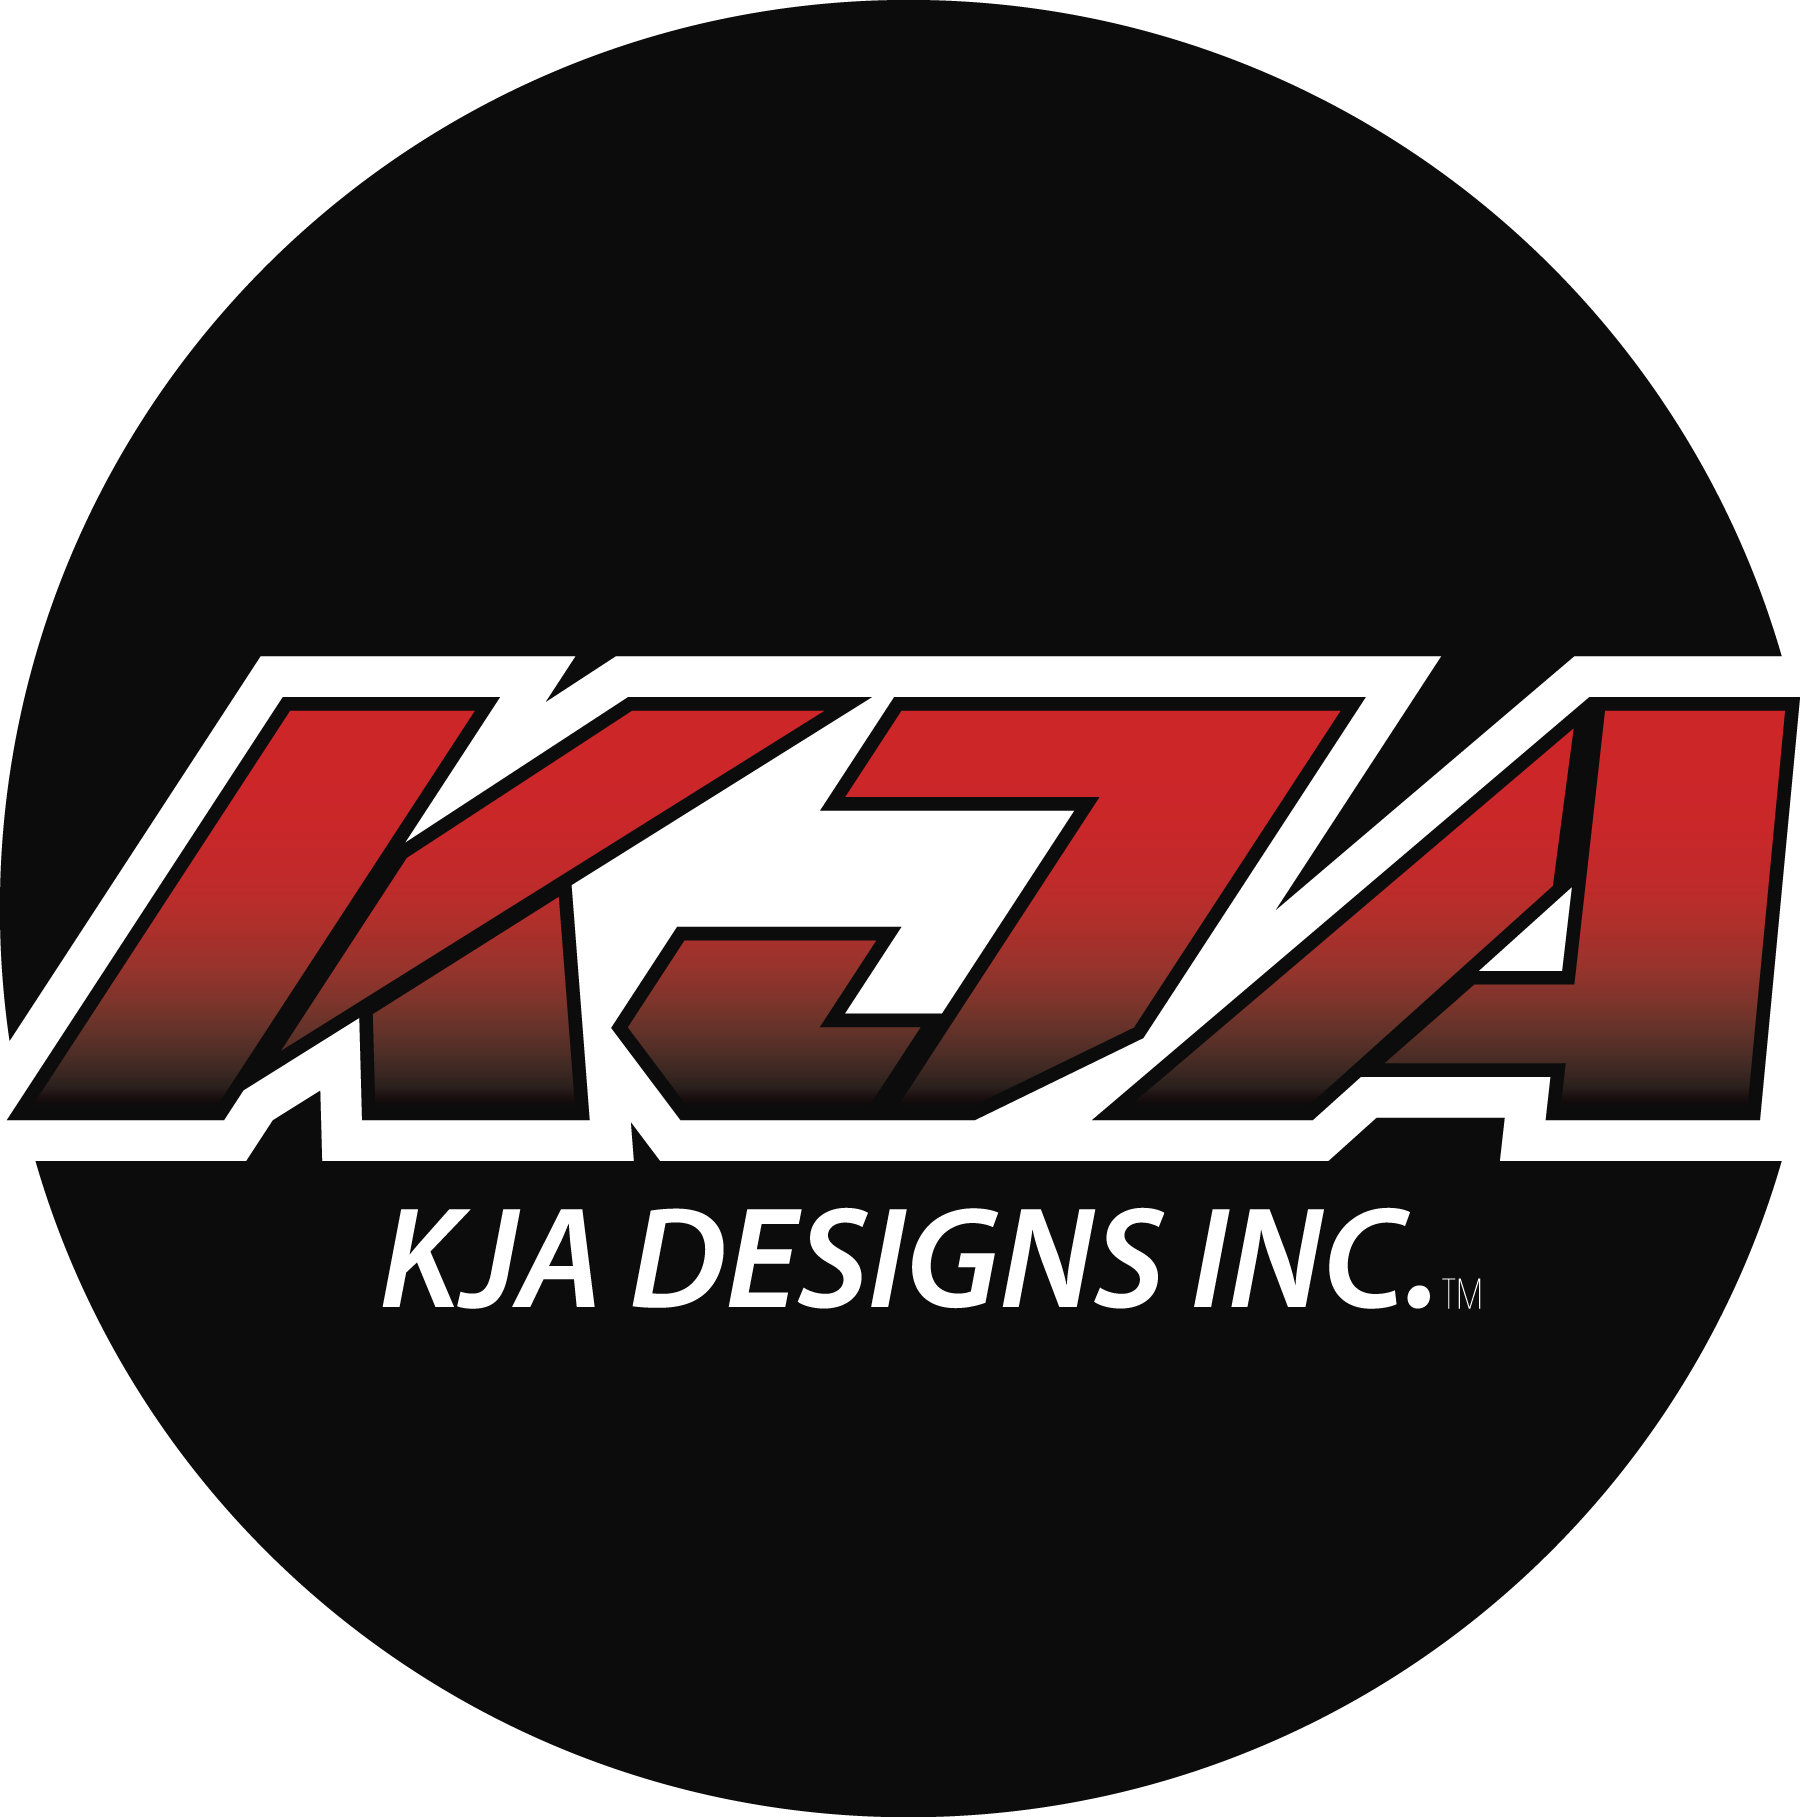 KJA Designs Inc.™ 3C on site